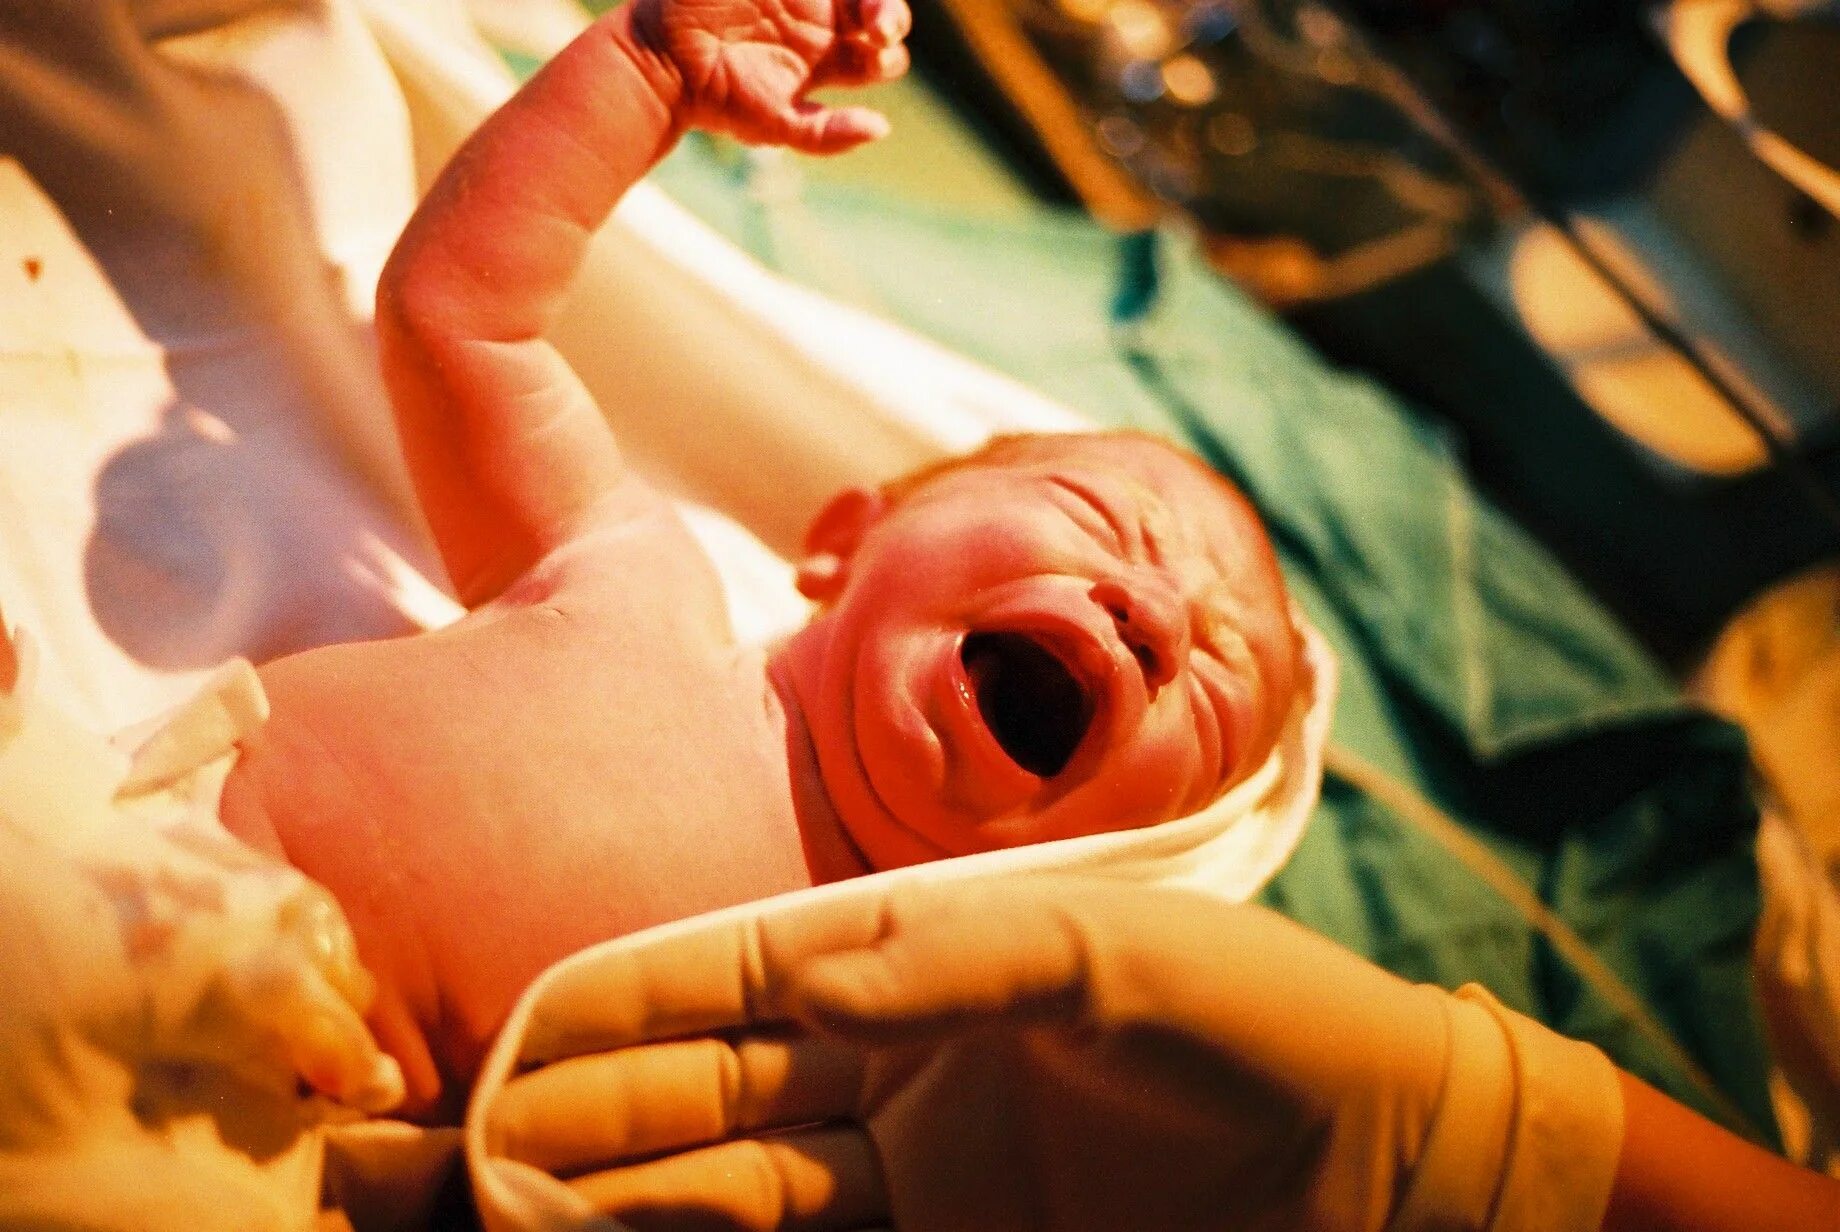 Процесс рождения ребенка в роддоме. Новорожденный в родильном зале.